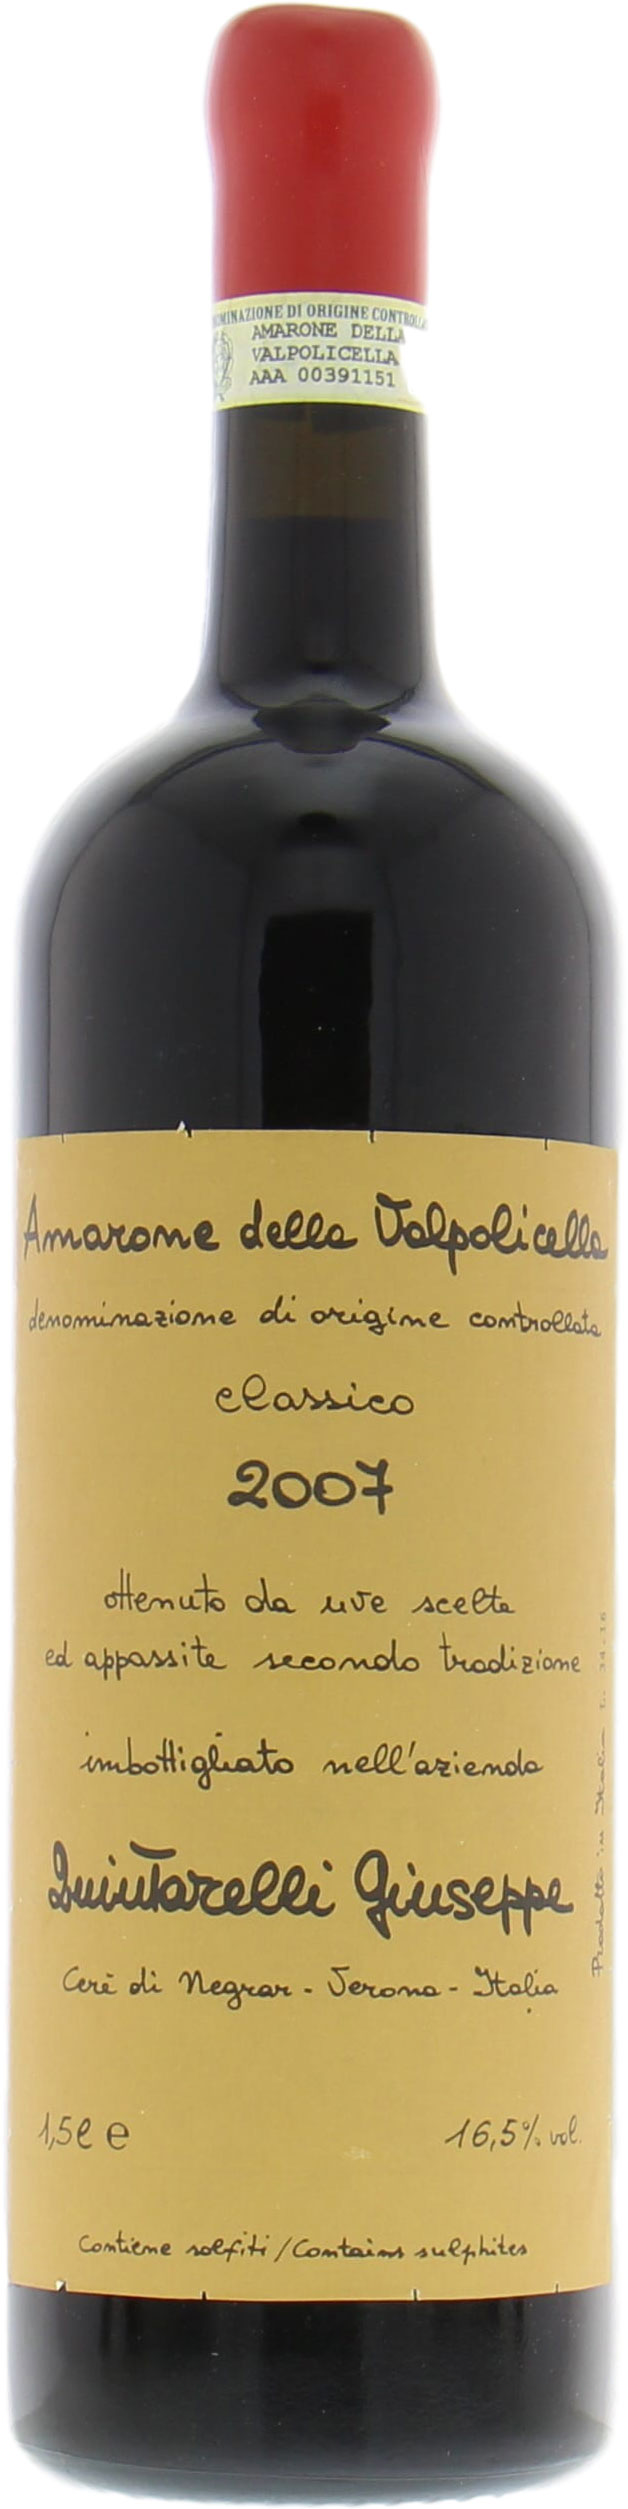 Quintarelli  - Amarone della Valpolicella Classico 2007